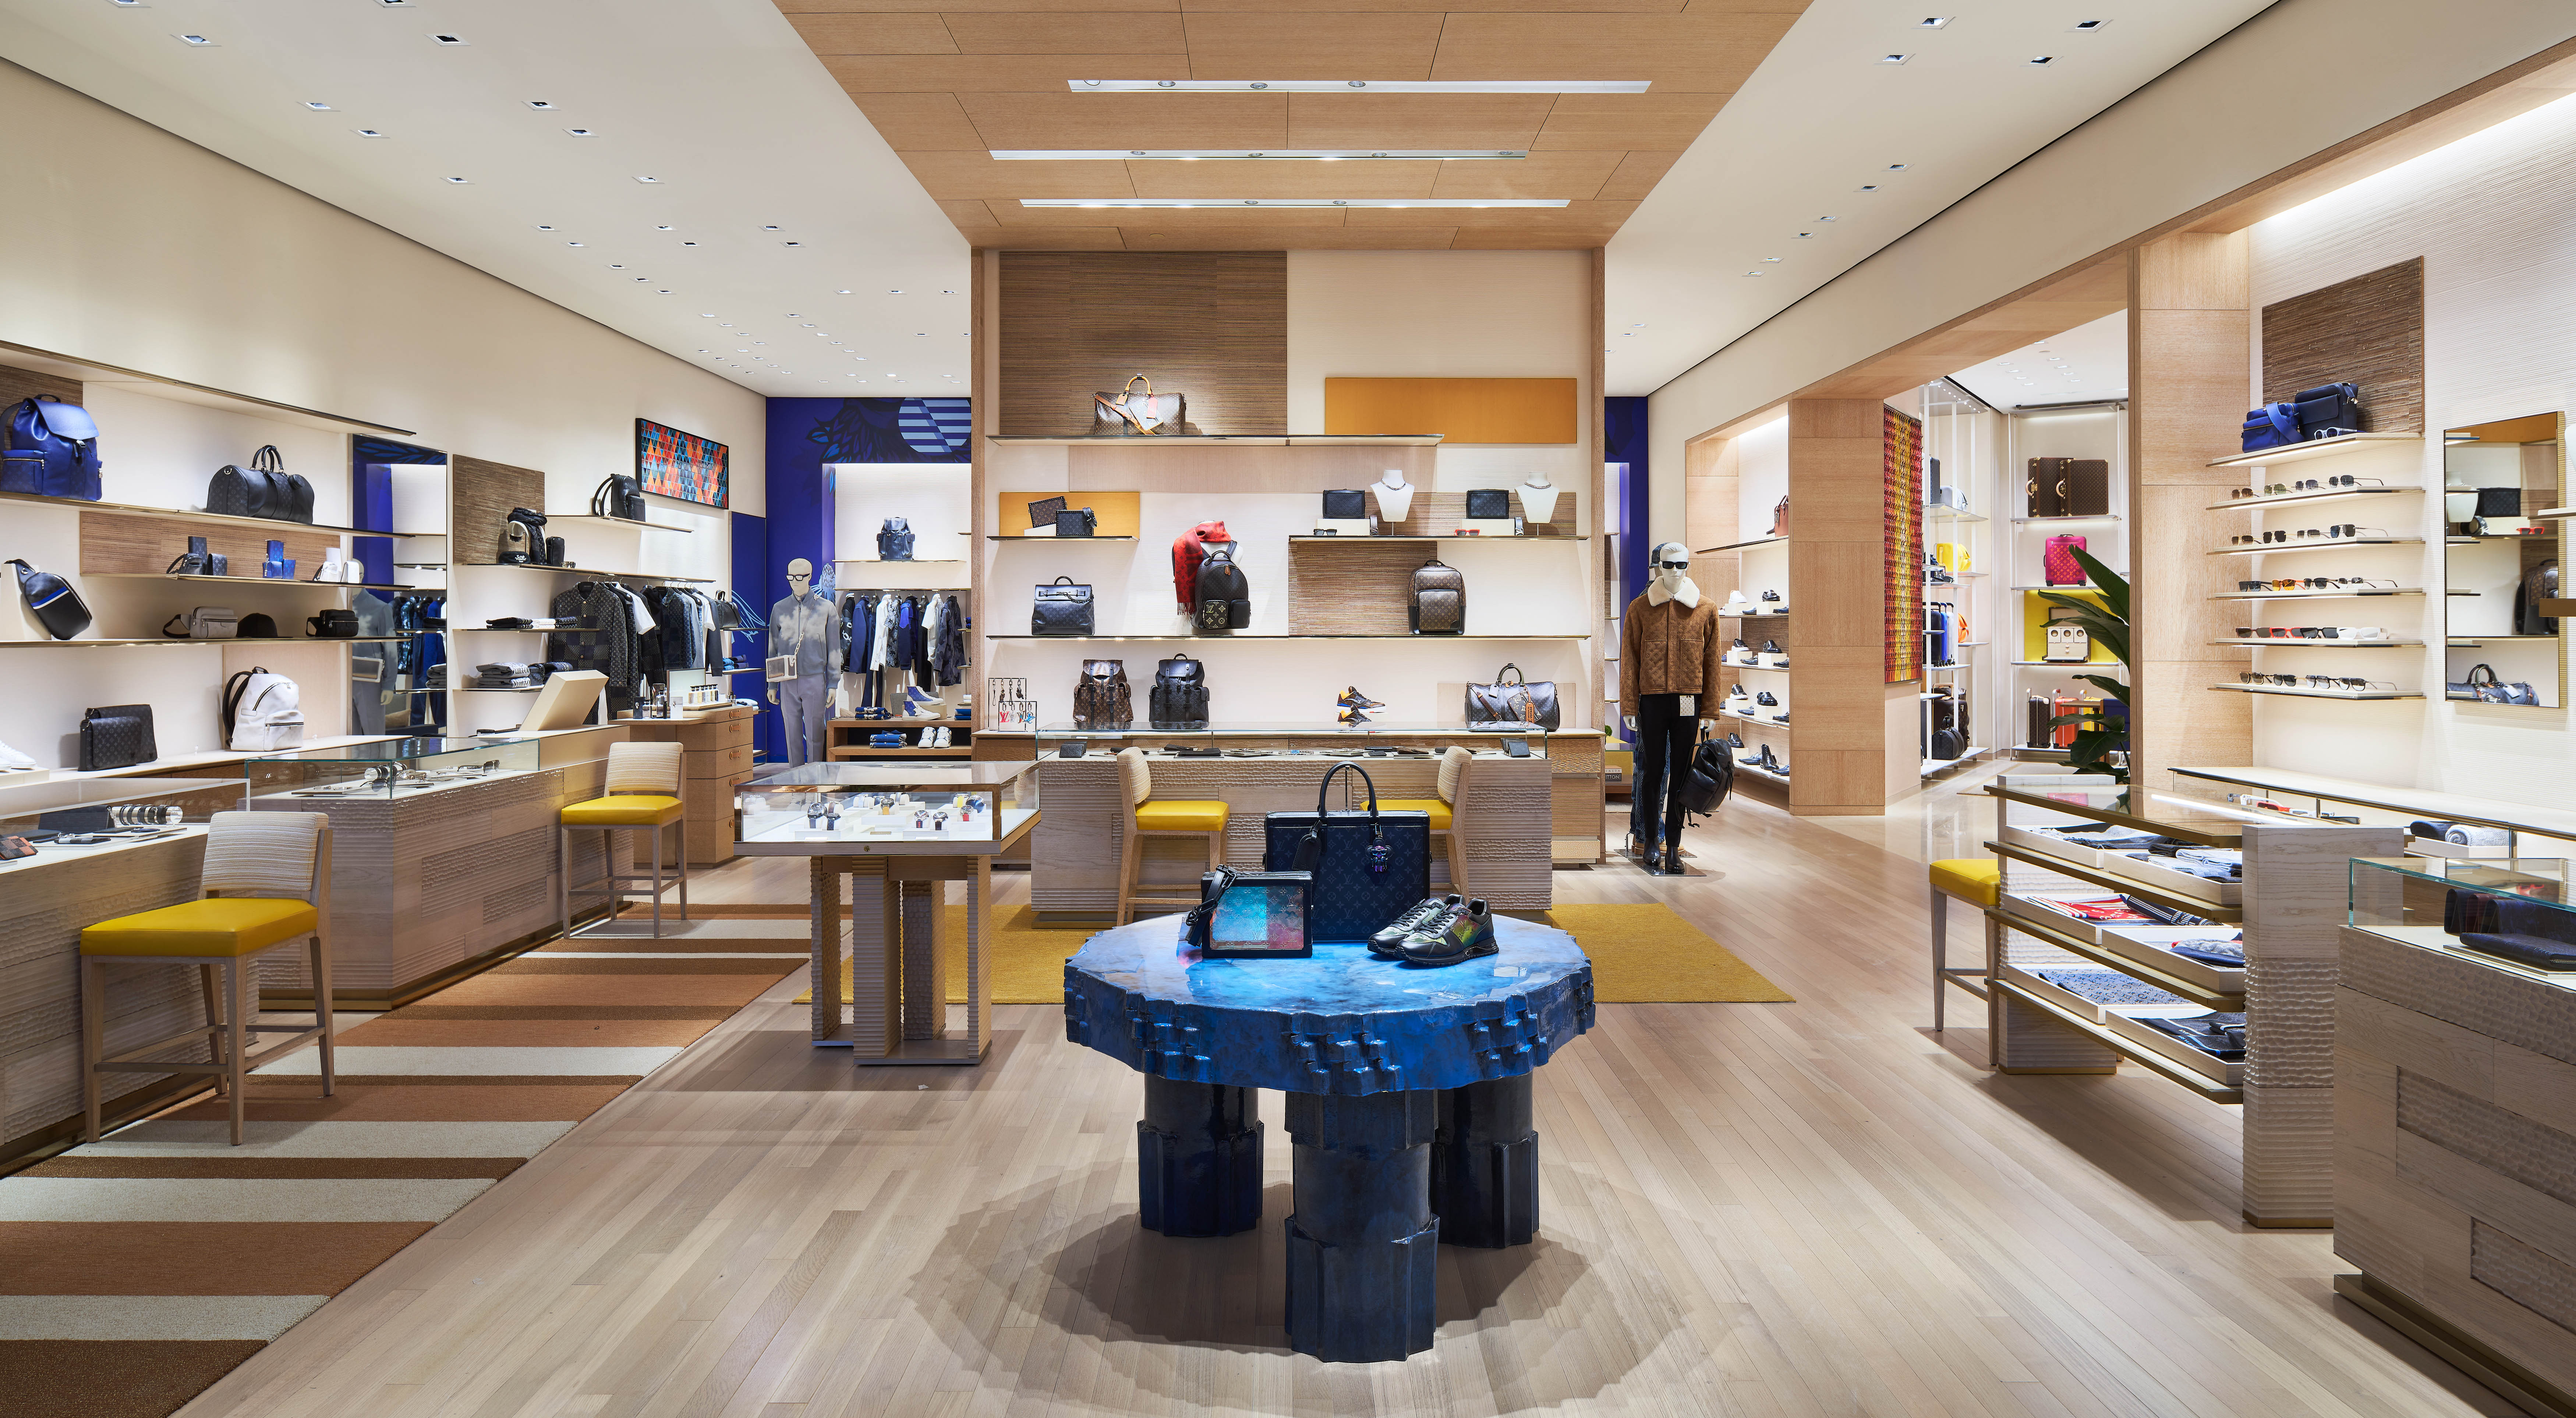 Style news: Louis Vuitton's new Toronto location celebrates the